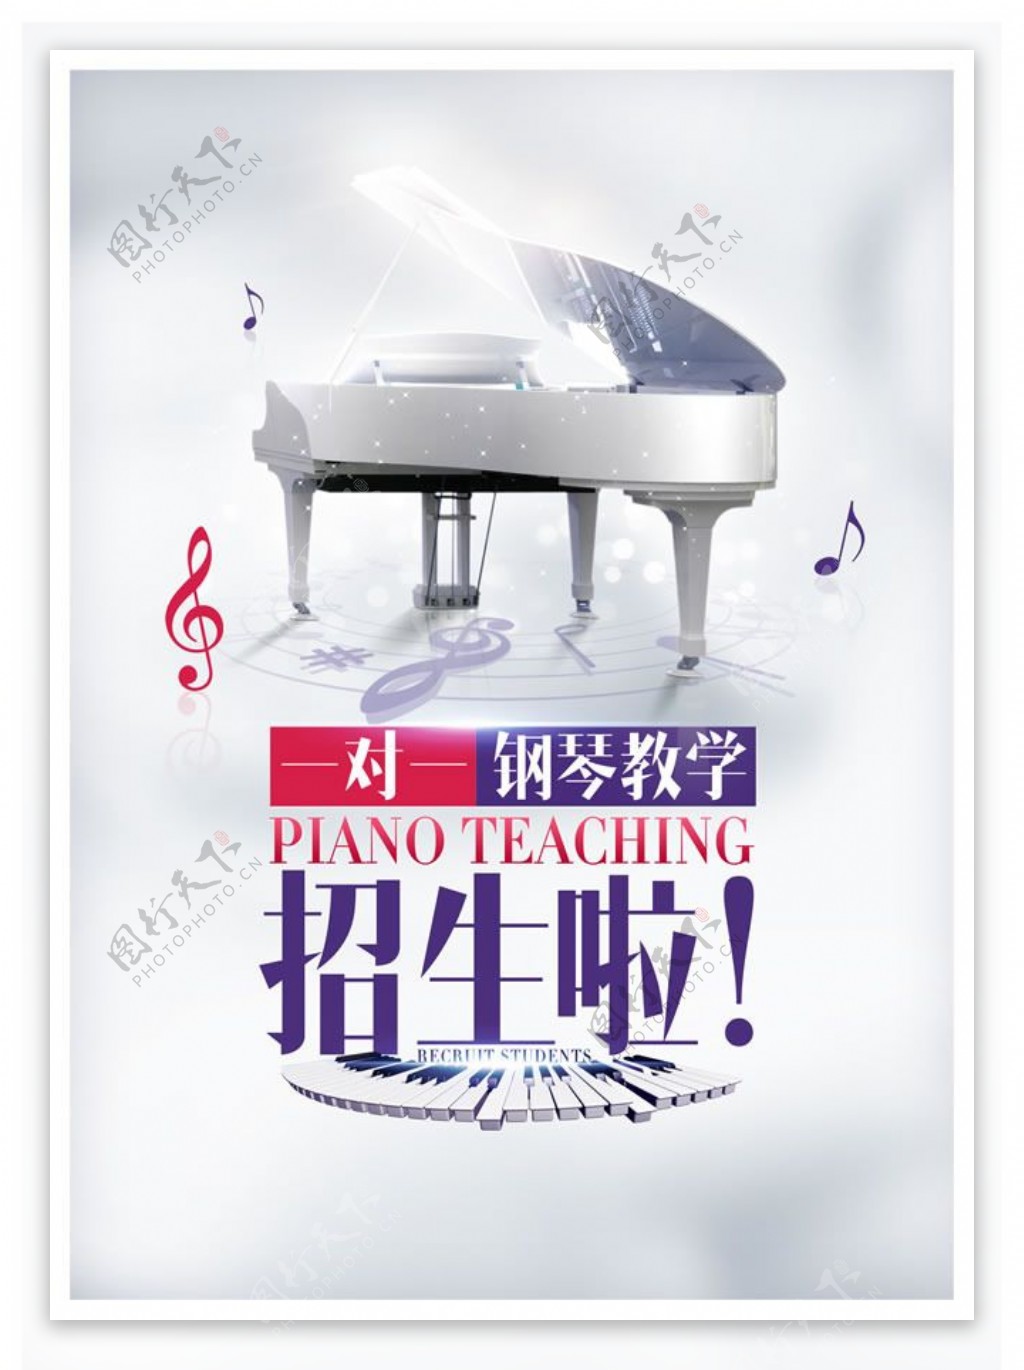 钢琴培训班招生广告PSD素材